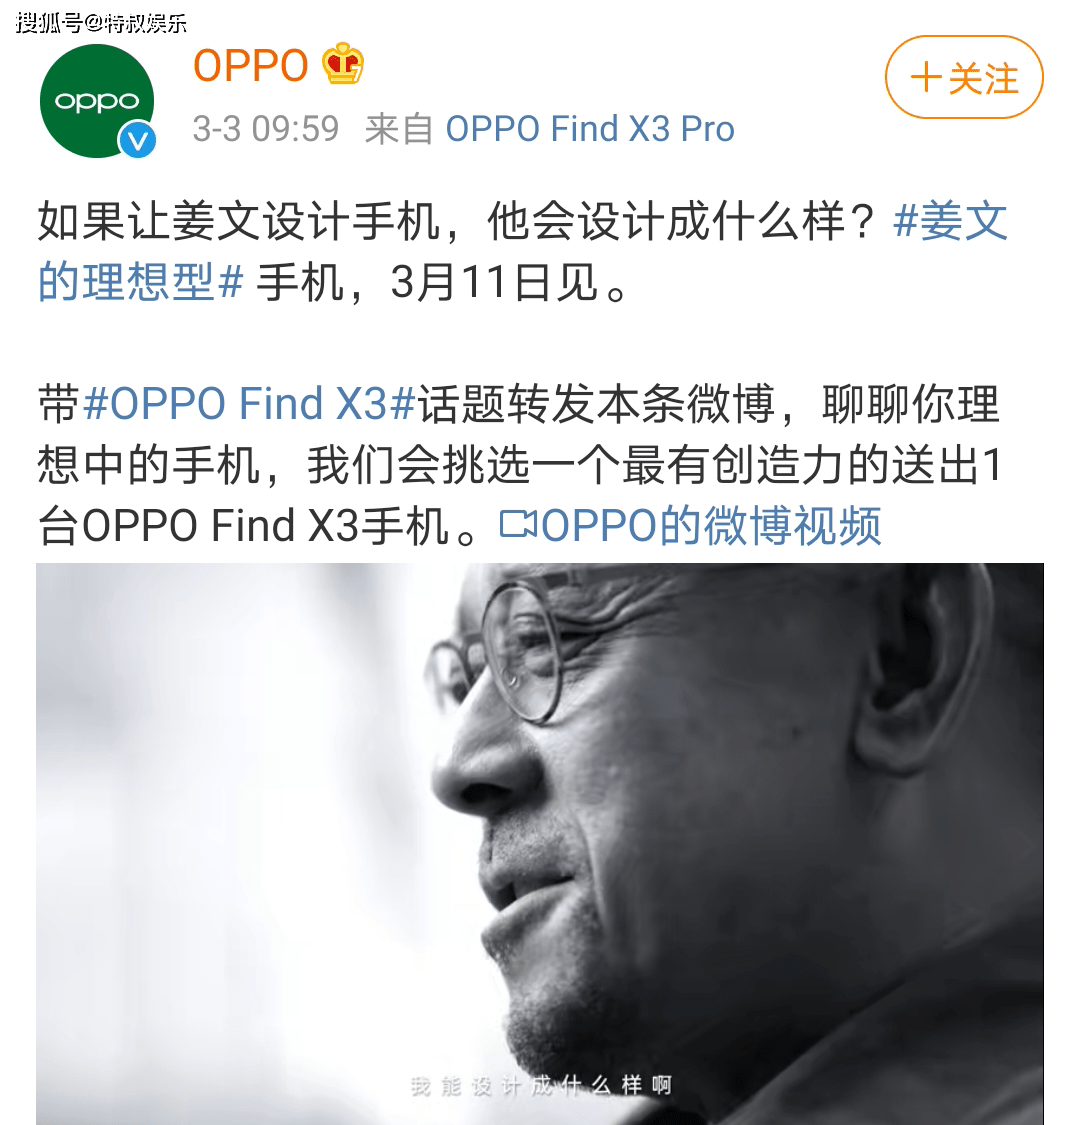 原来是oppo新手机的宣传片. oppo真是出息了,竟然能请到姜文做代言人.